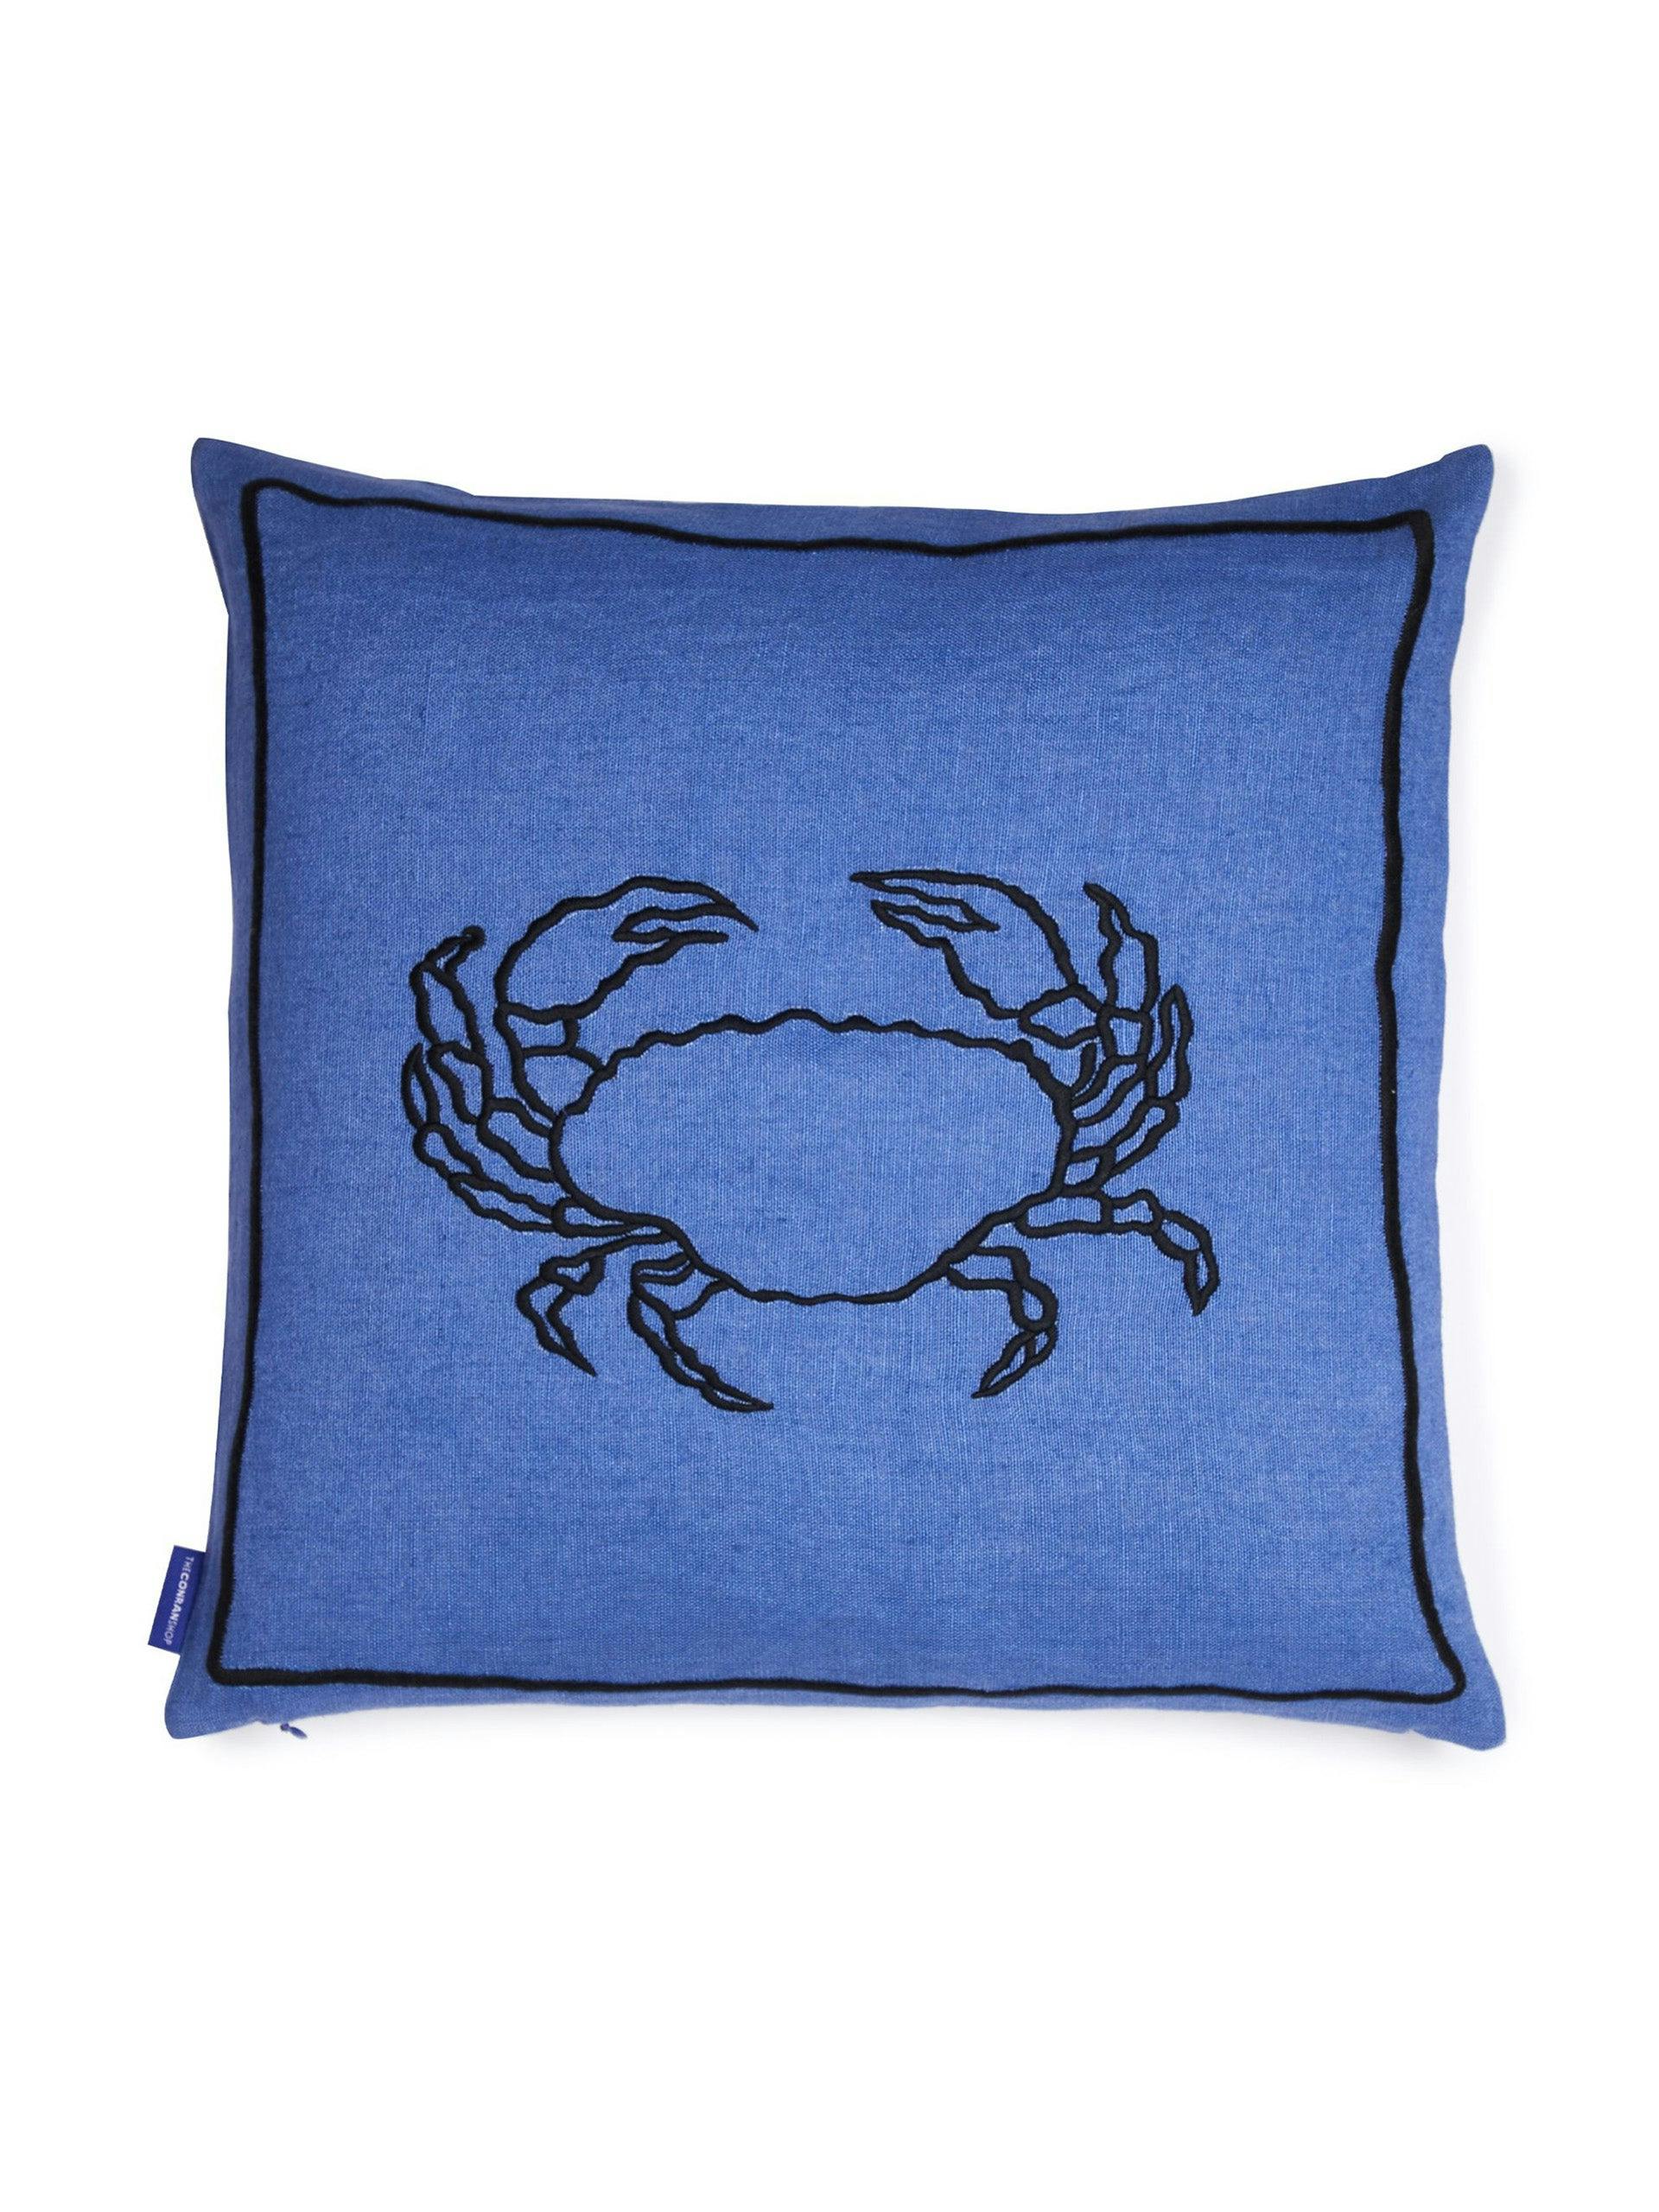 Blue crab cushion cover